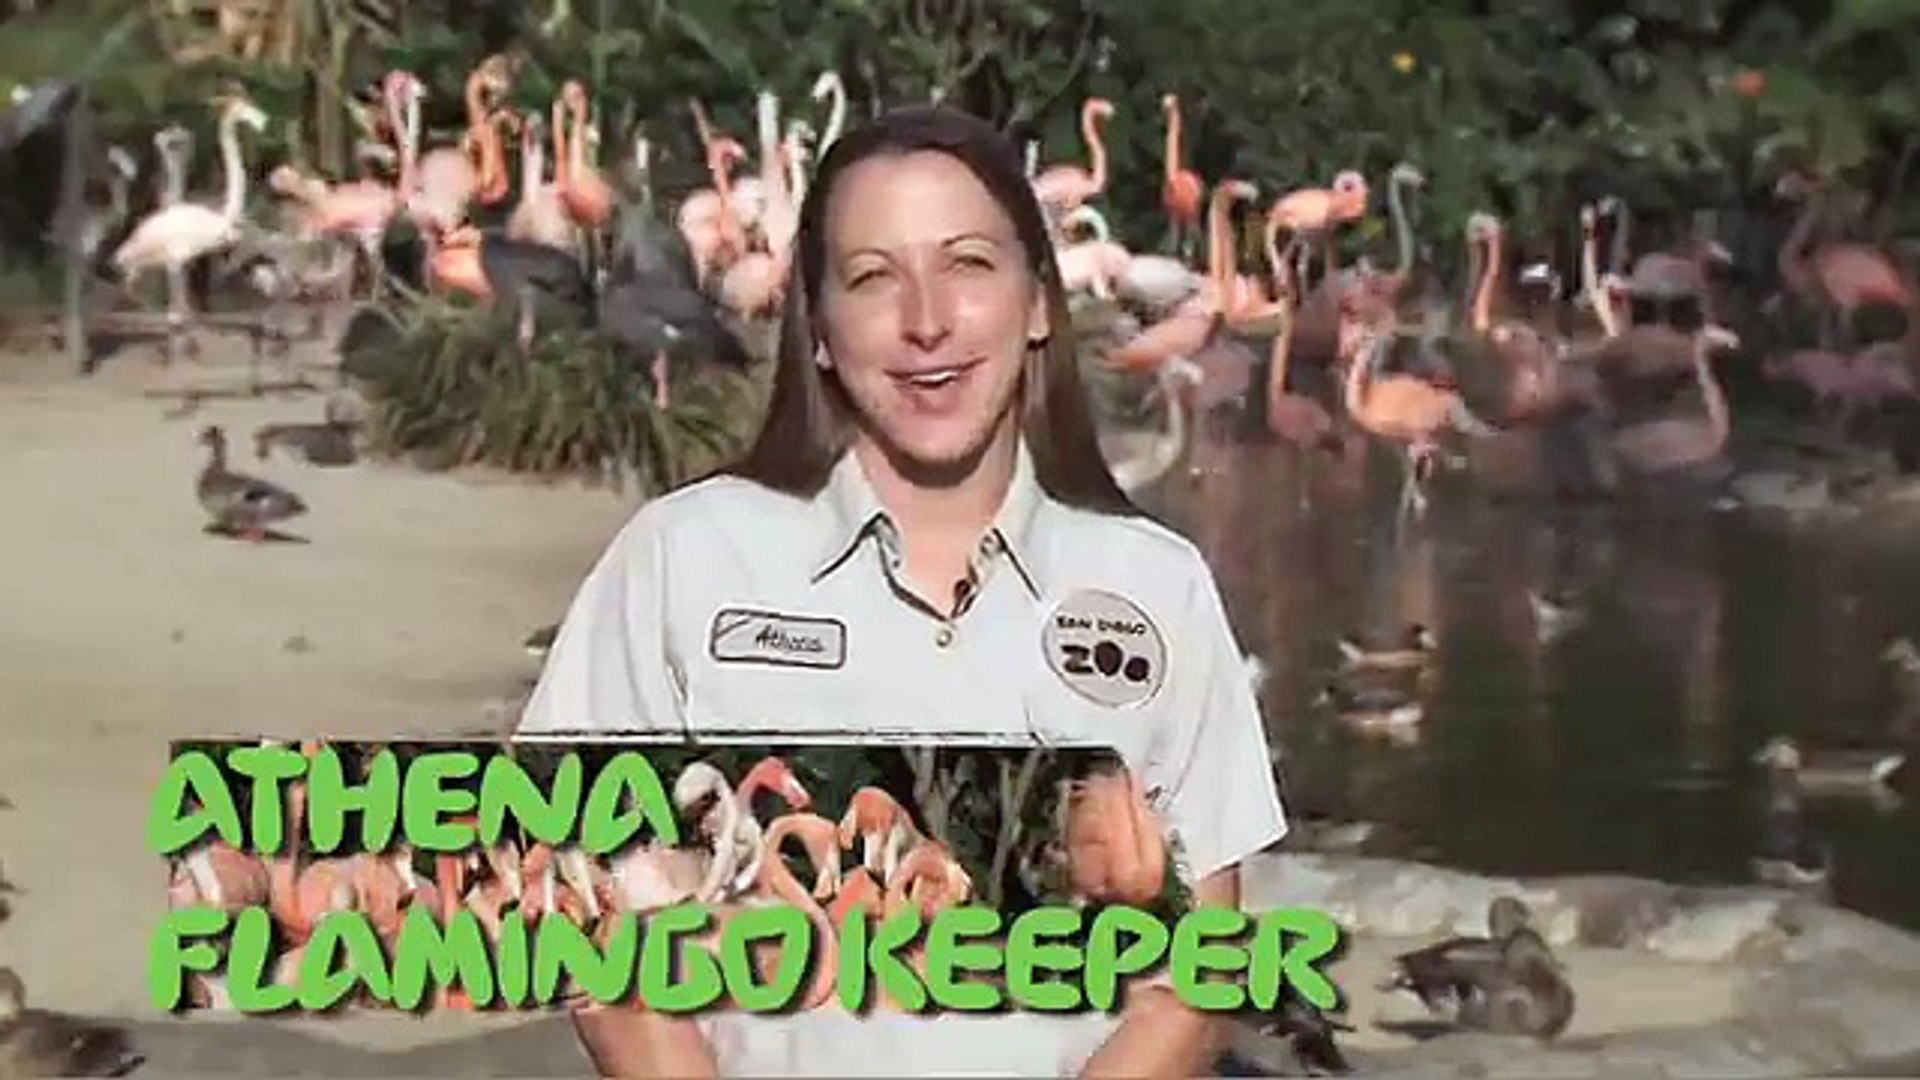 San Diego Zoo Kids - Flamingos